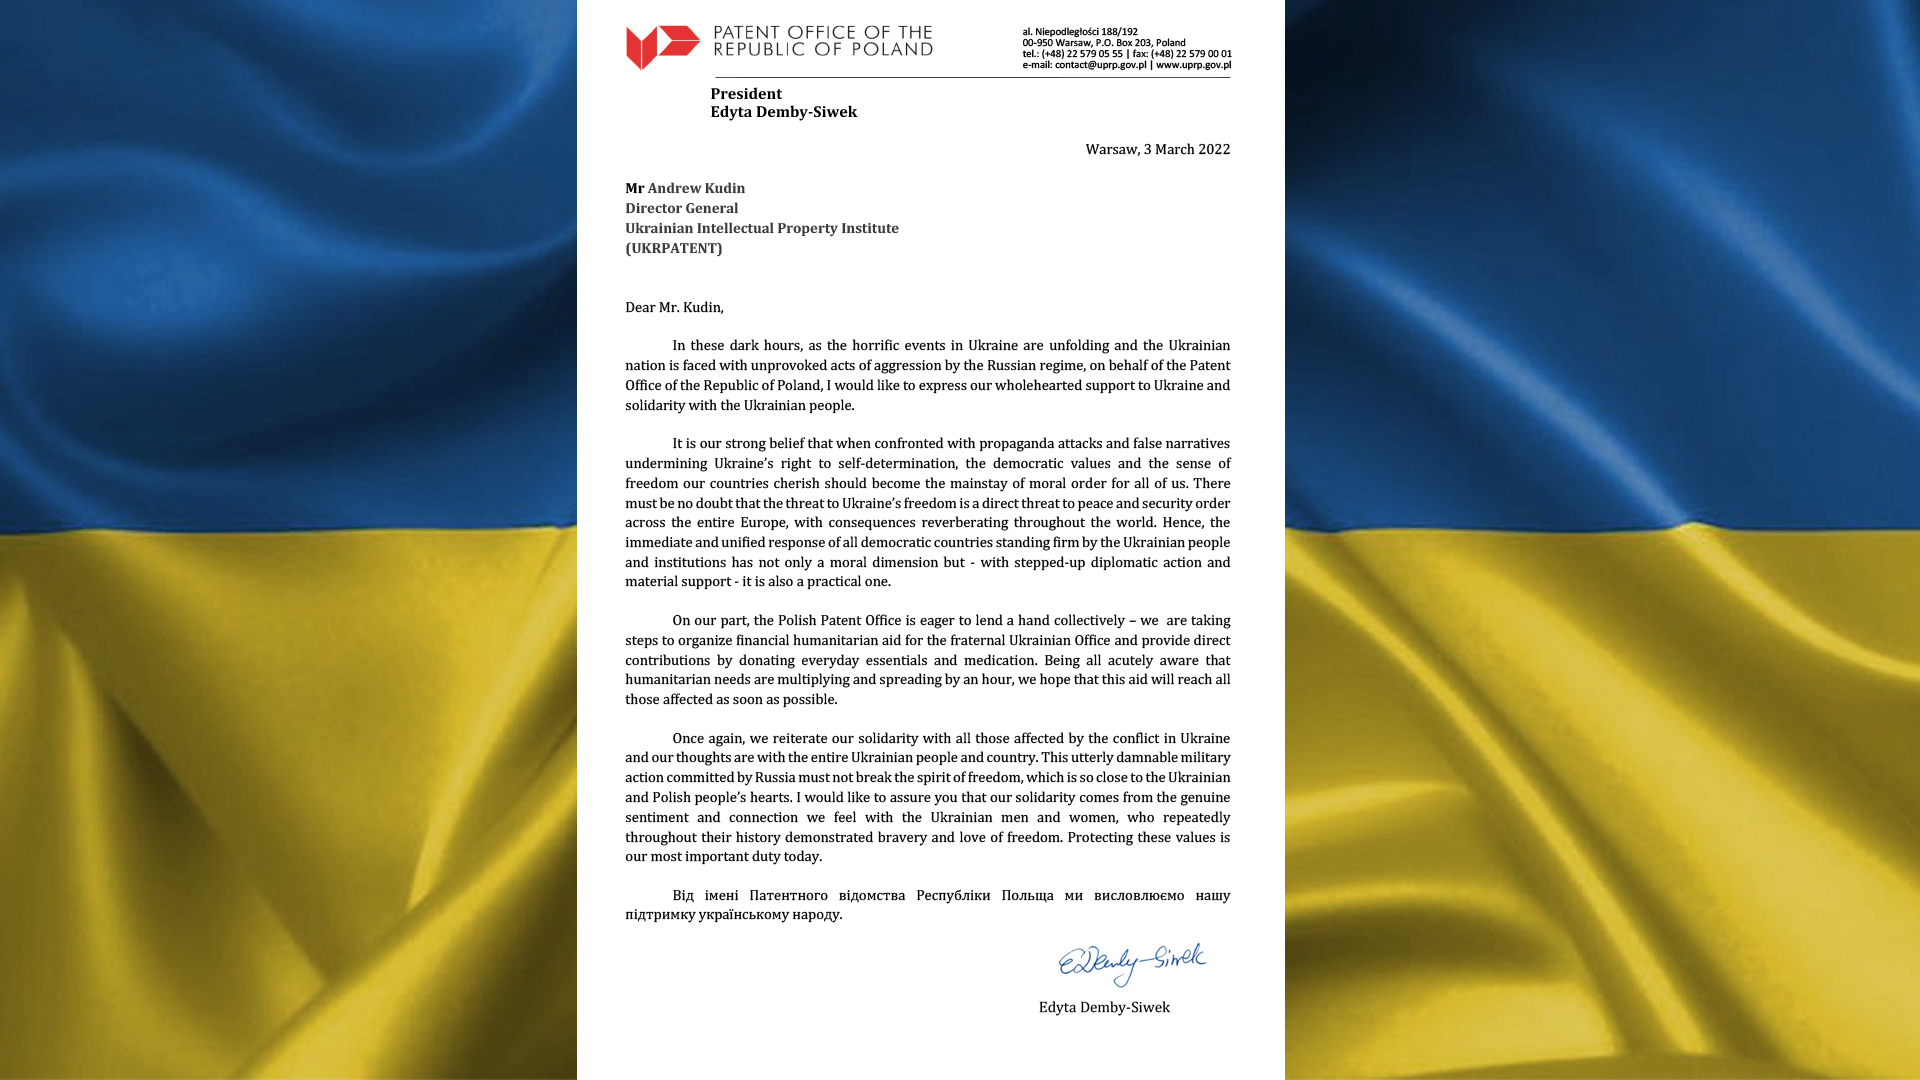 List od Prezes Urzędu Patentowego RP Edyty Demby-Siwek do Dyrektora Generalnego Ukraińskiego Instytutu Własności Przemysłowej Andrija Kudina